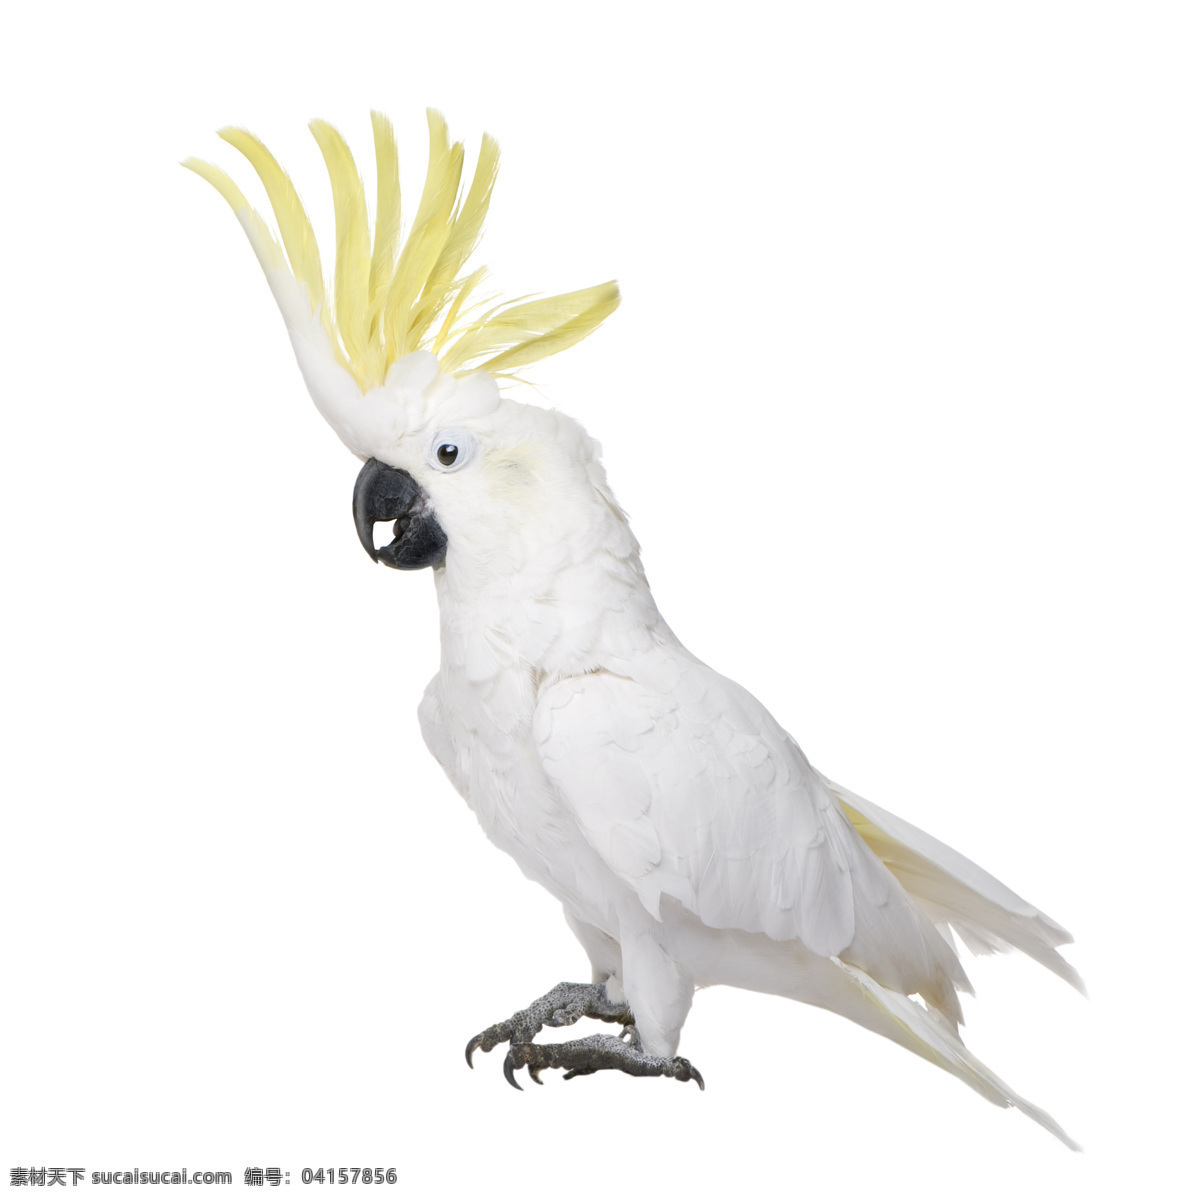 玄凤 鹦鹉 鸟类 鸟类图片 设计图 设计图库 生物世界 小鸟 鹦鹉图片 玄凤鹦鹉图片